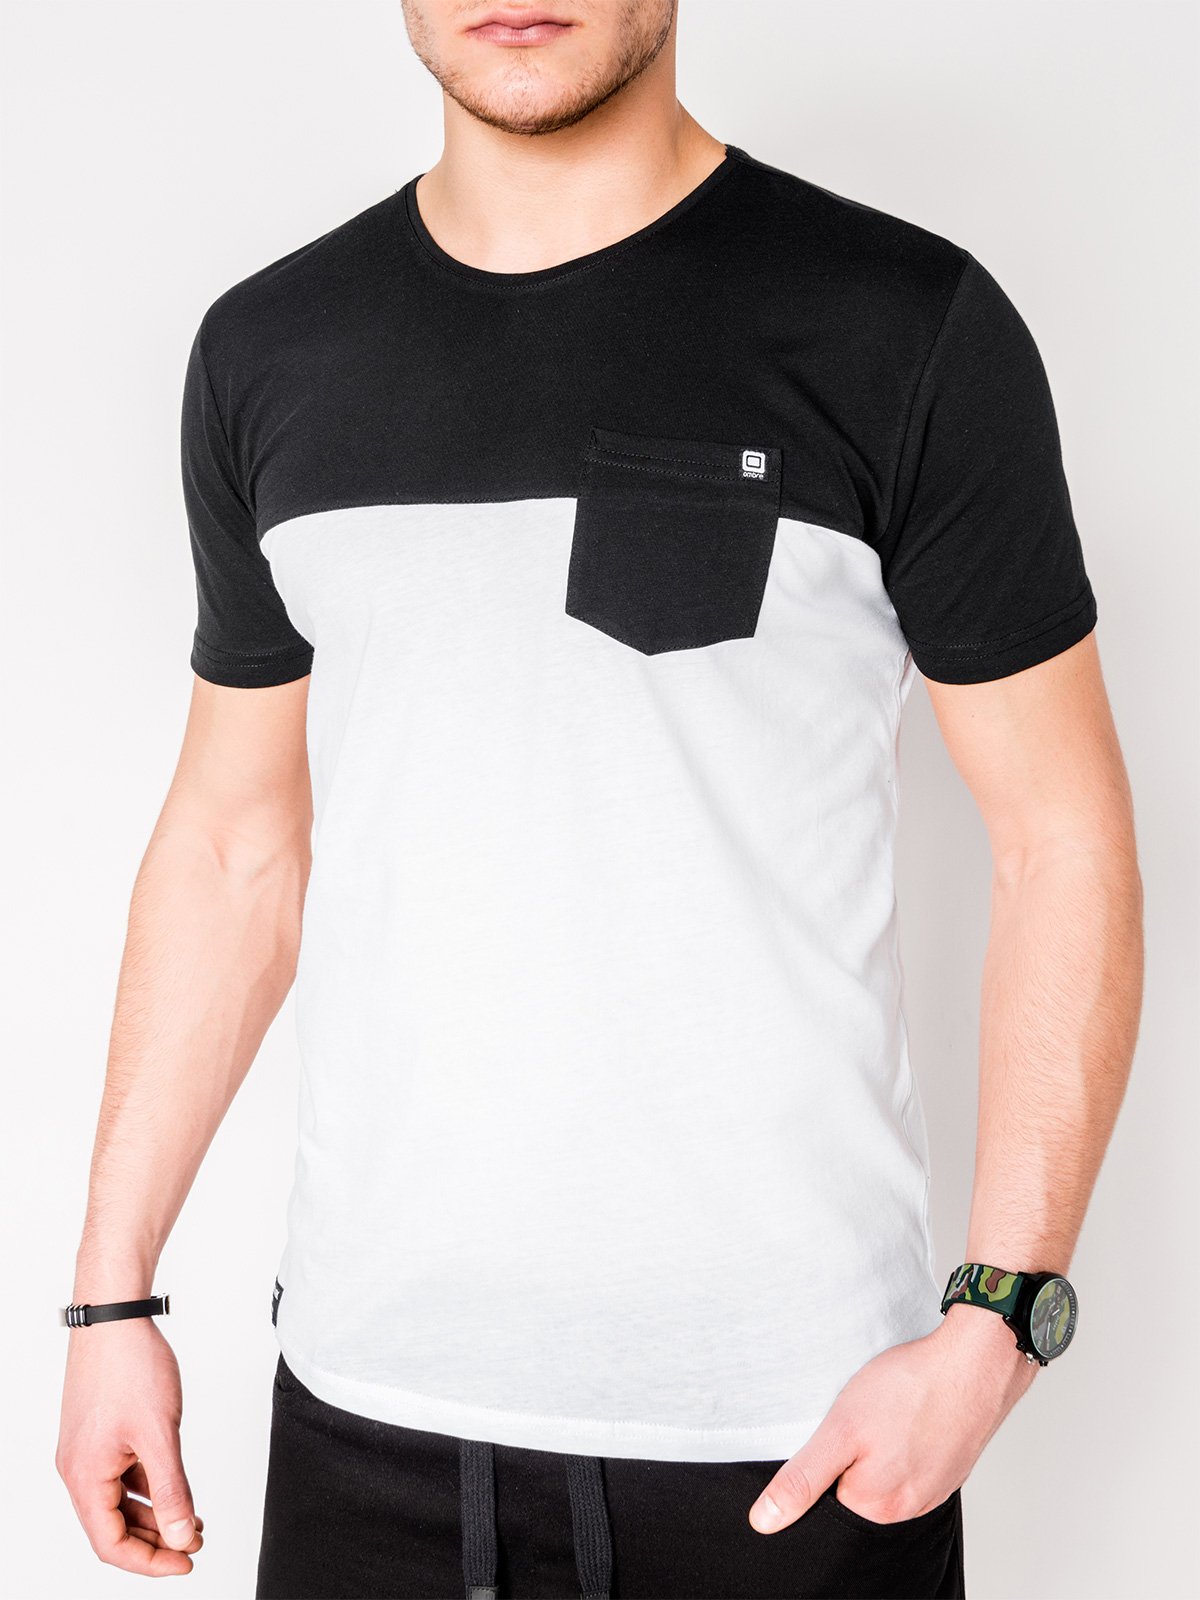 Men's plain t-shirt S1014 - black/white | MODONE wholesale - Clothing ...